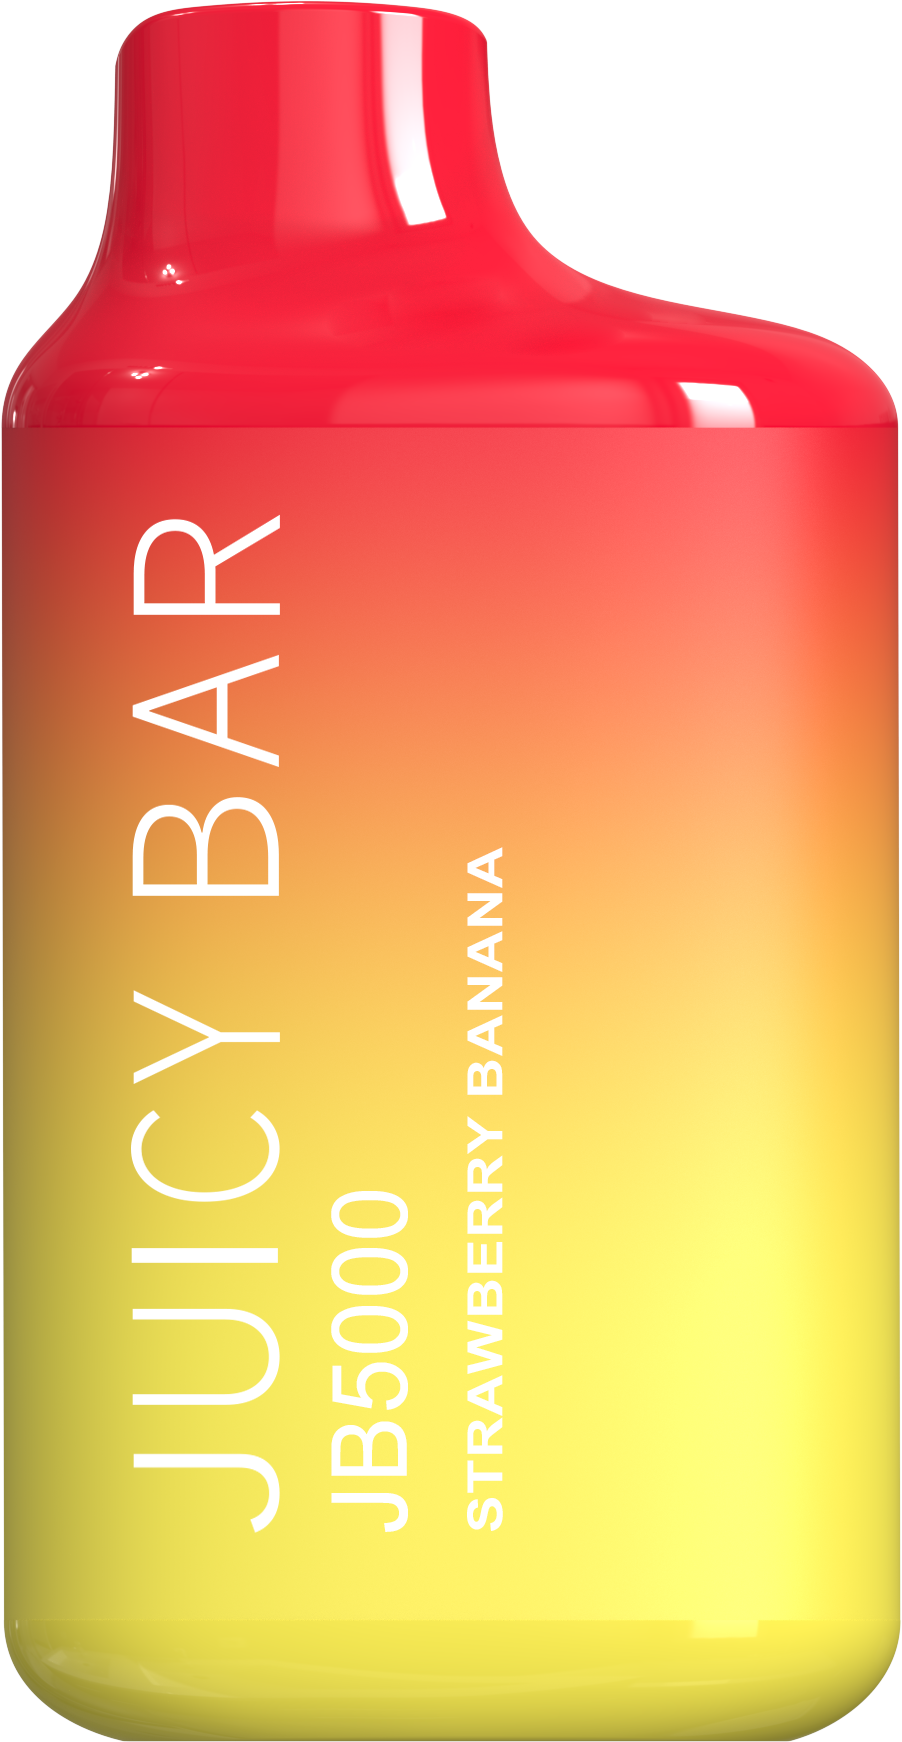 Juicy Bar JB5000 5K 3% | Strawberry Banana